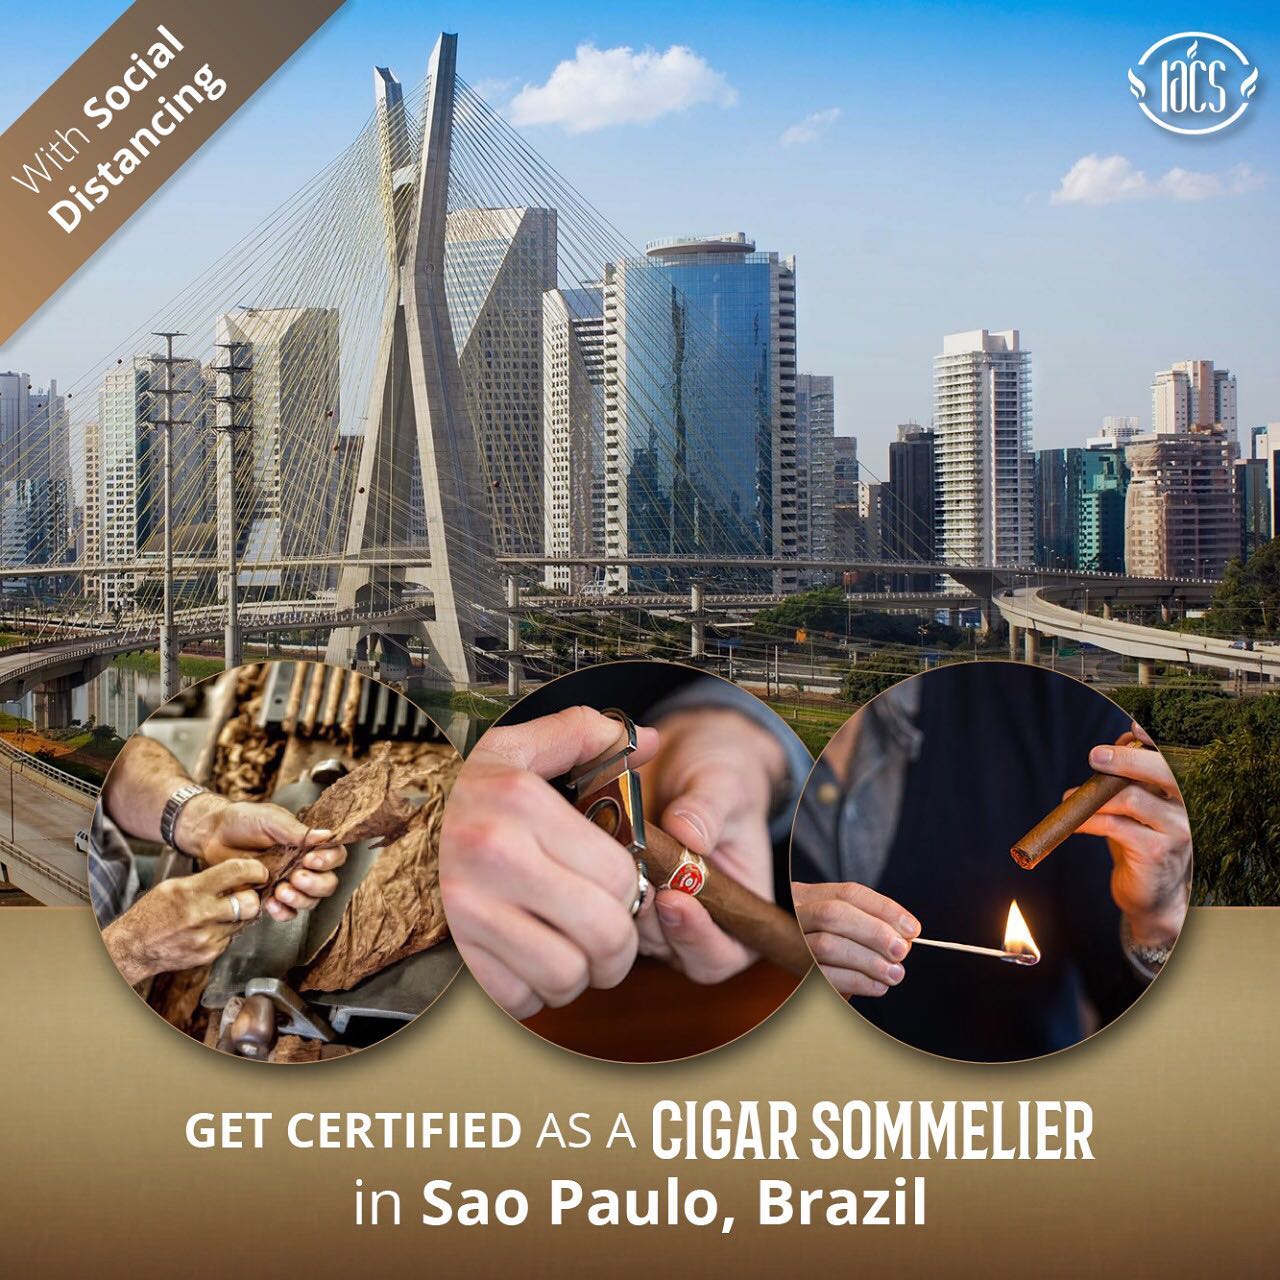 IACS : Estamos de volta amigos, e o destino é São Paulo, Brasil, não perca a chance de obter a certificação de #InternationalCigarSommelier